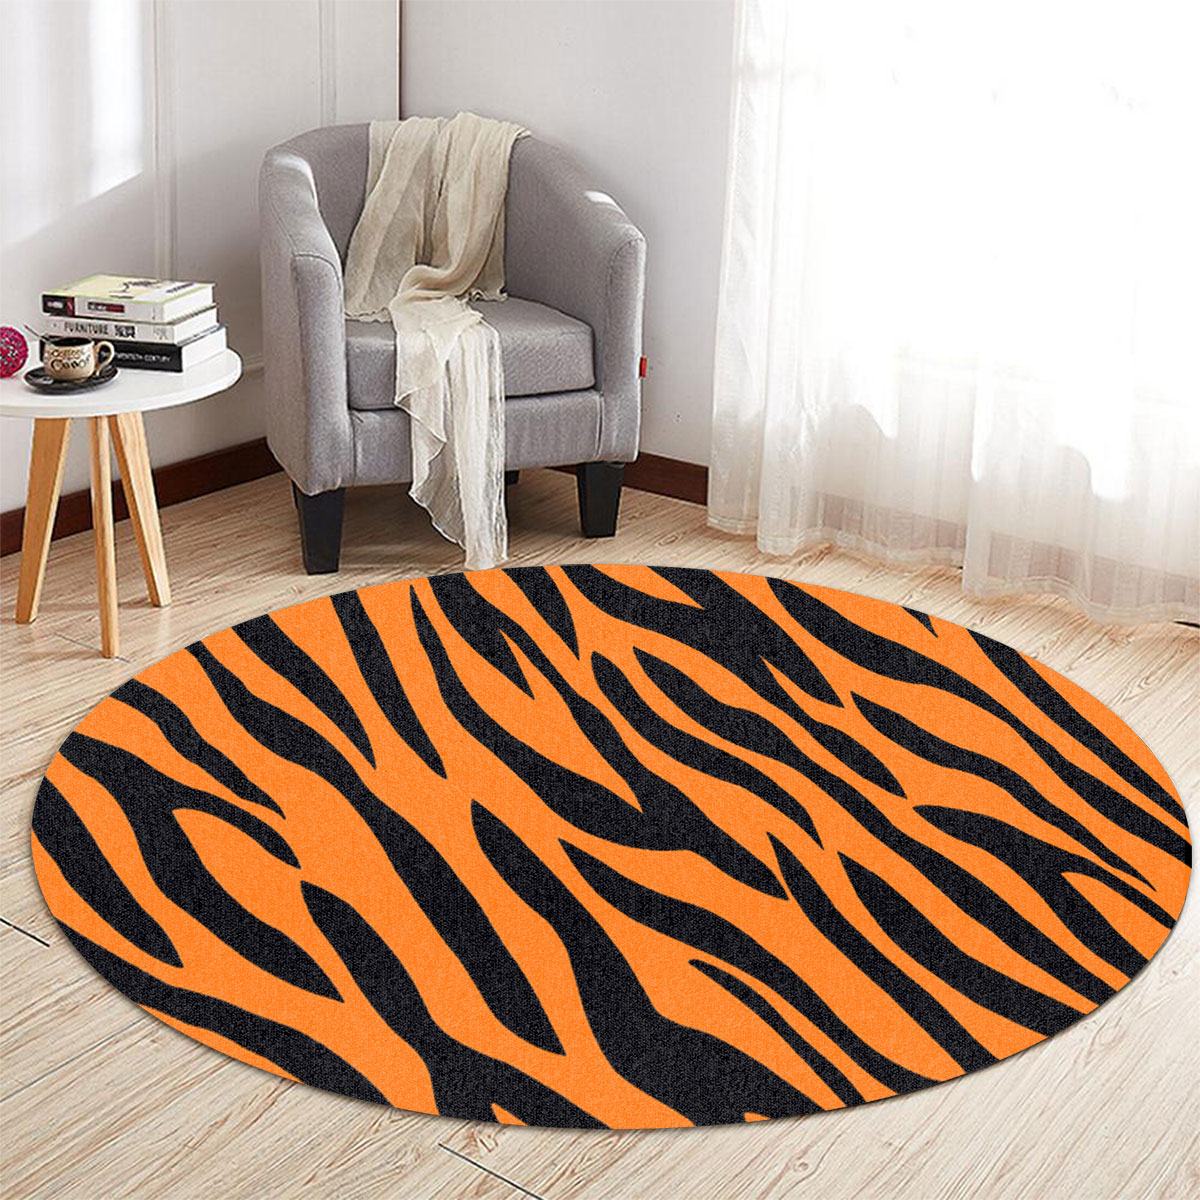 Tiger Skin Round Carpet 6